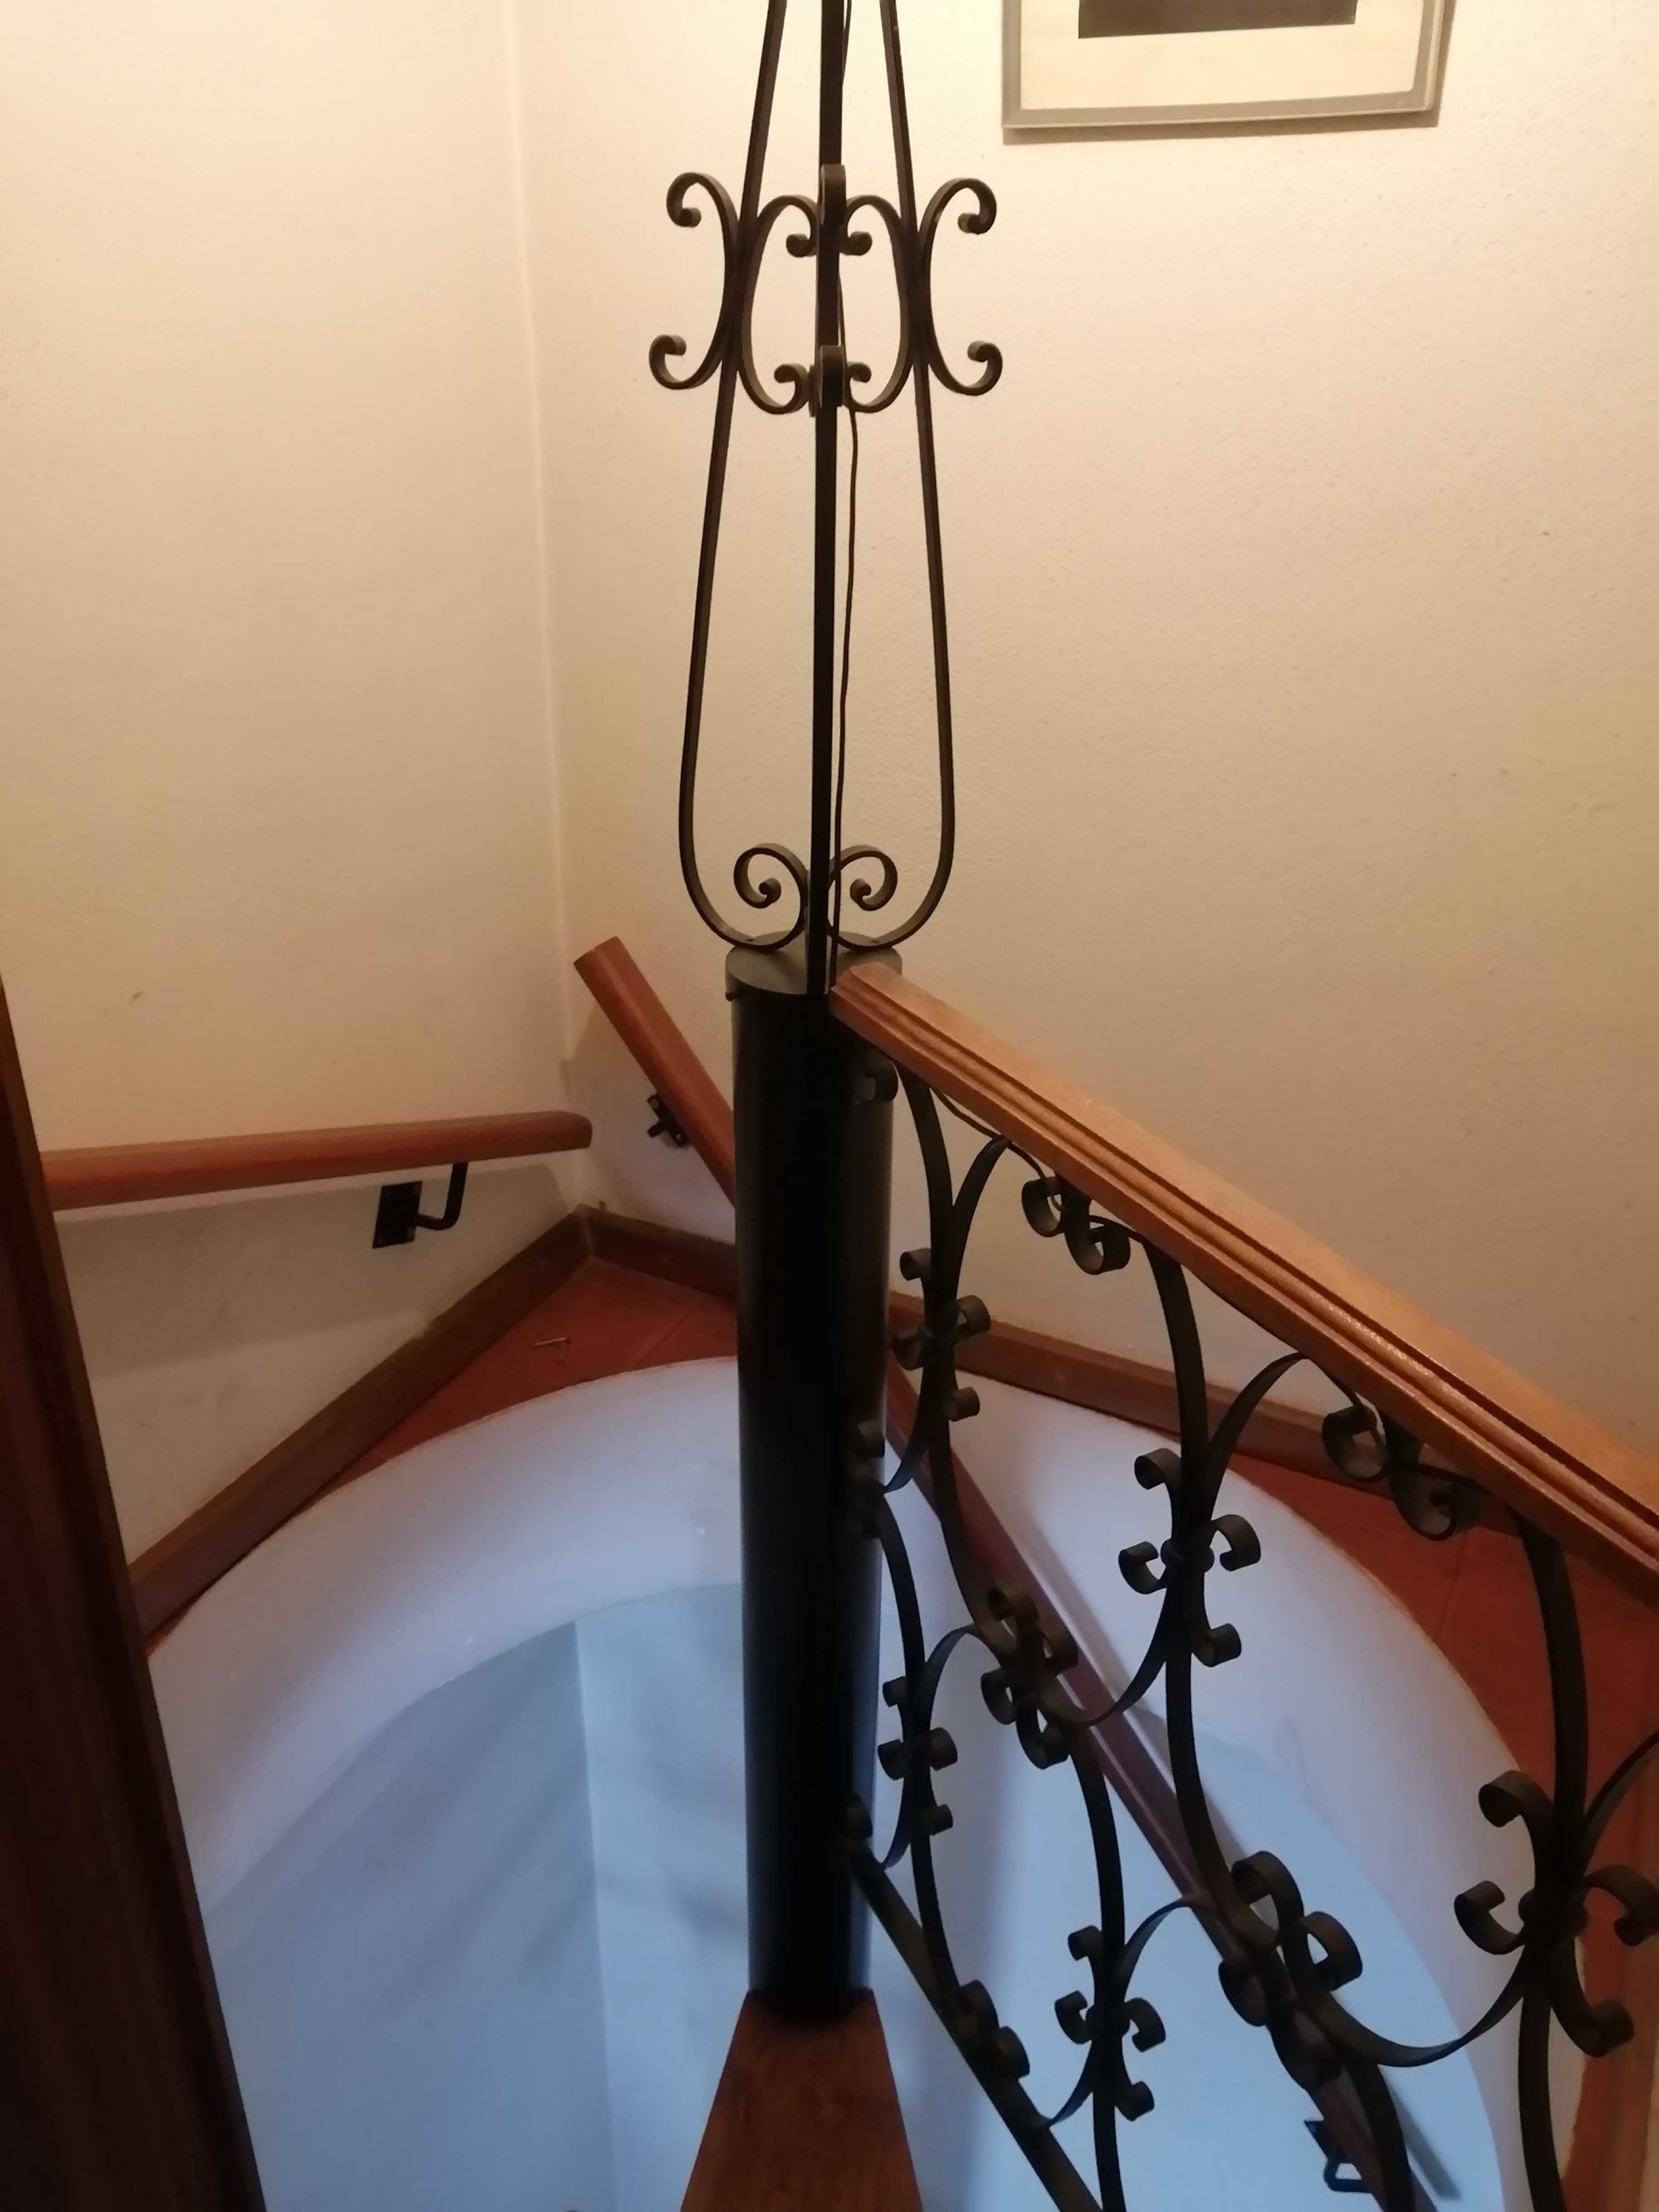 Escadas em caracol. Em ferro pintado a preto. Degraus em madeira.